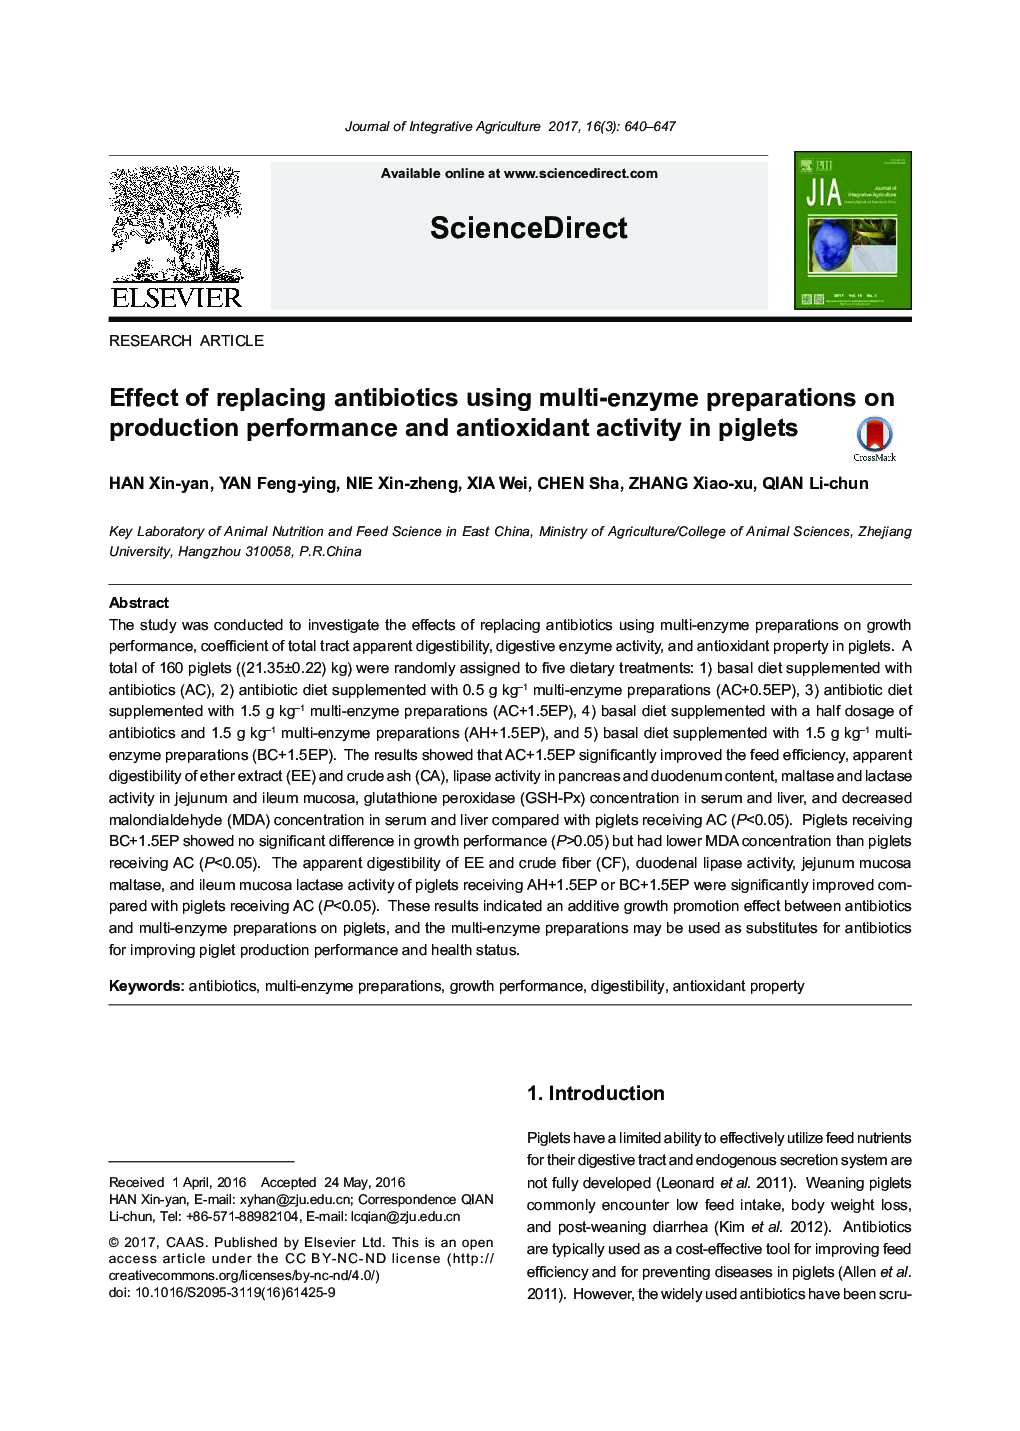 اثر جایگزینی آنتی بیوتیک ها با استفاده از آنزیم های چند آنزیم بر عملکرد تولید و فعالیت آنتی اکسیدانی در خوک 